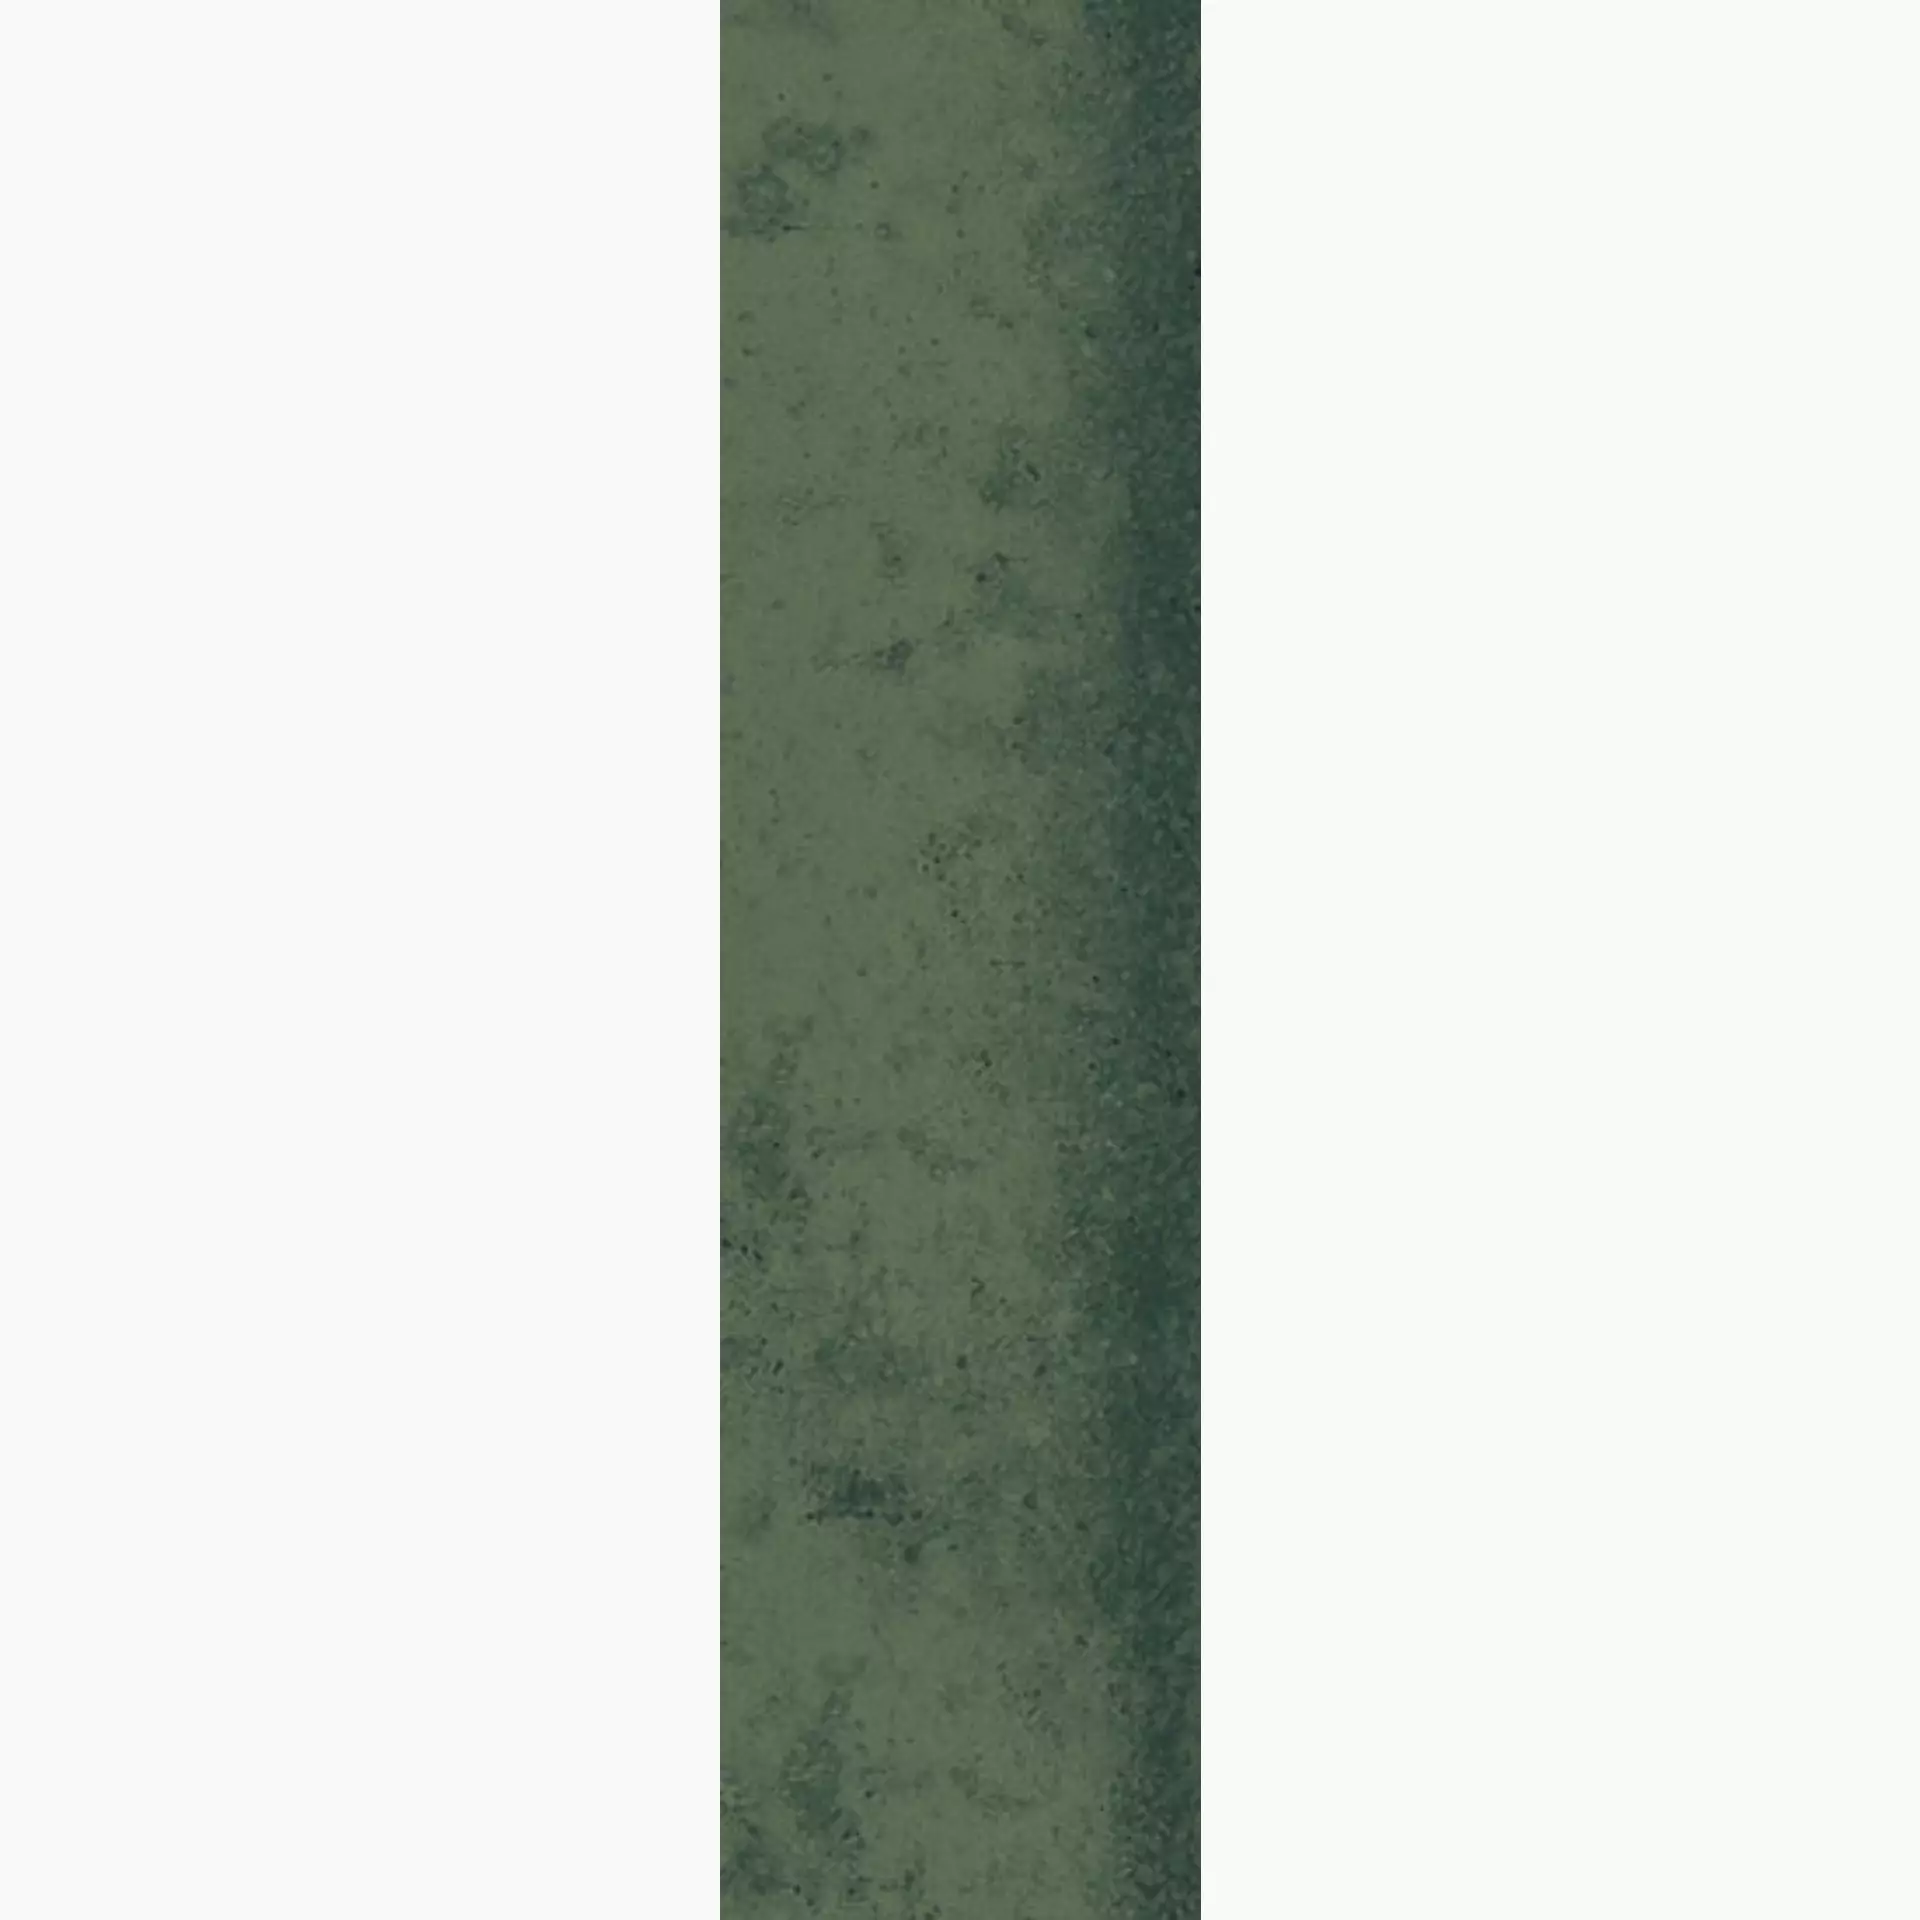 MGM Jord Smeraldo Glossy JORDSME728 7x28cm